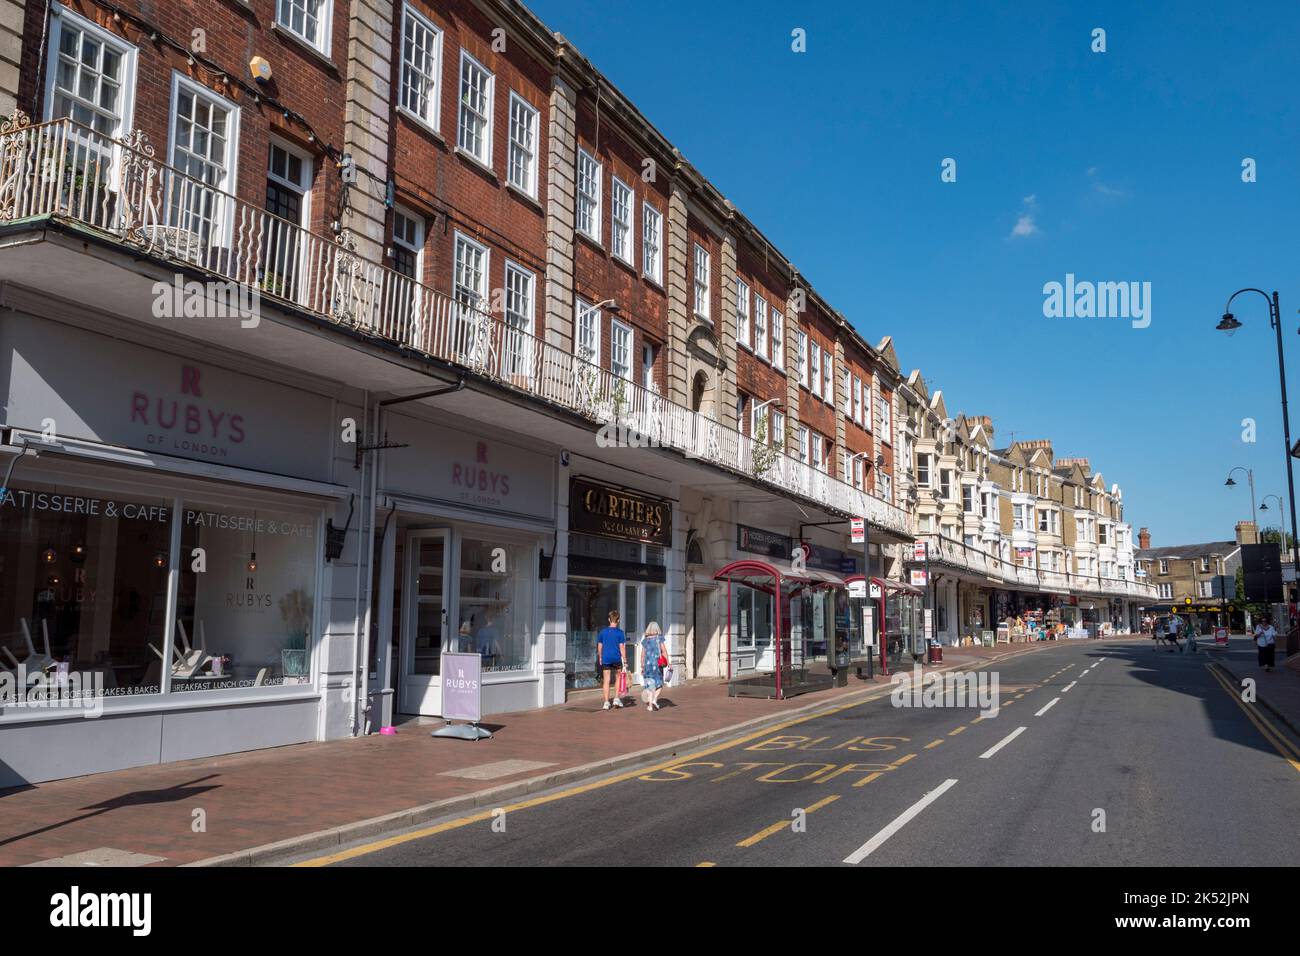 Vista general de las tiendas en el desfile de compras con balaustrada de hierro forjado en Monson Road en Royal Tunbridge Wells, Kent, Reino Unido. Foto de stock